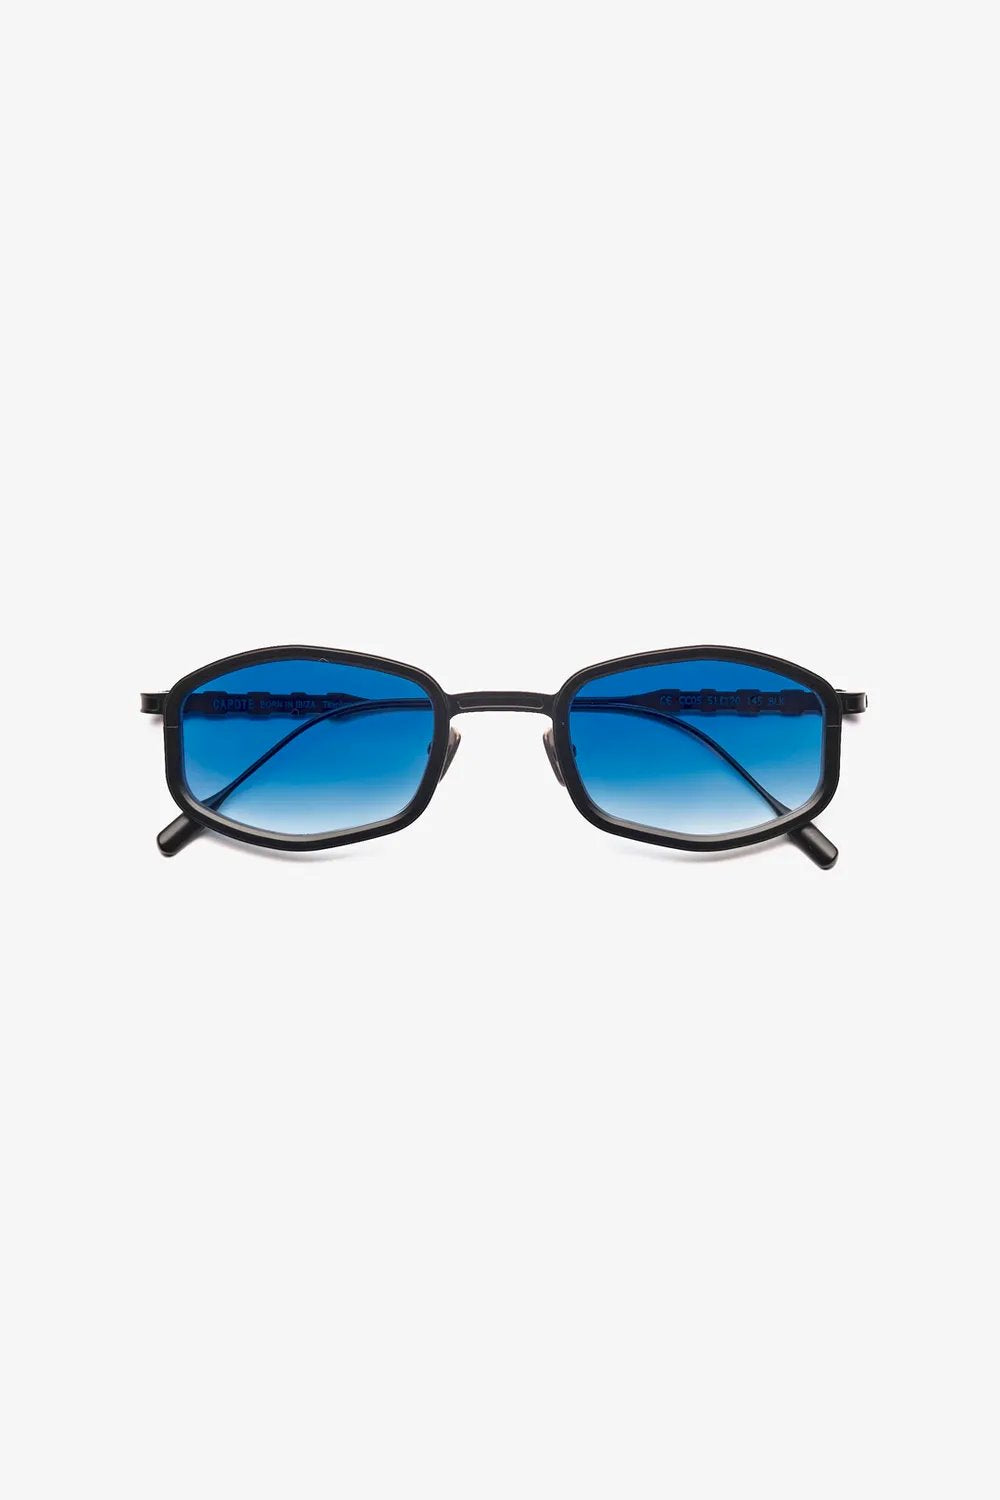 Capote - CC05 Sunglasses Capote Blue ONES 